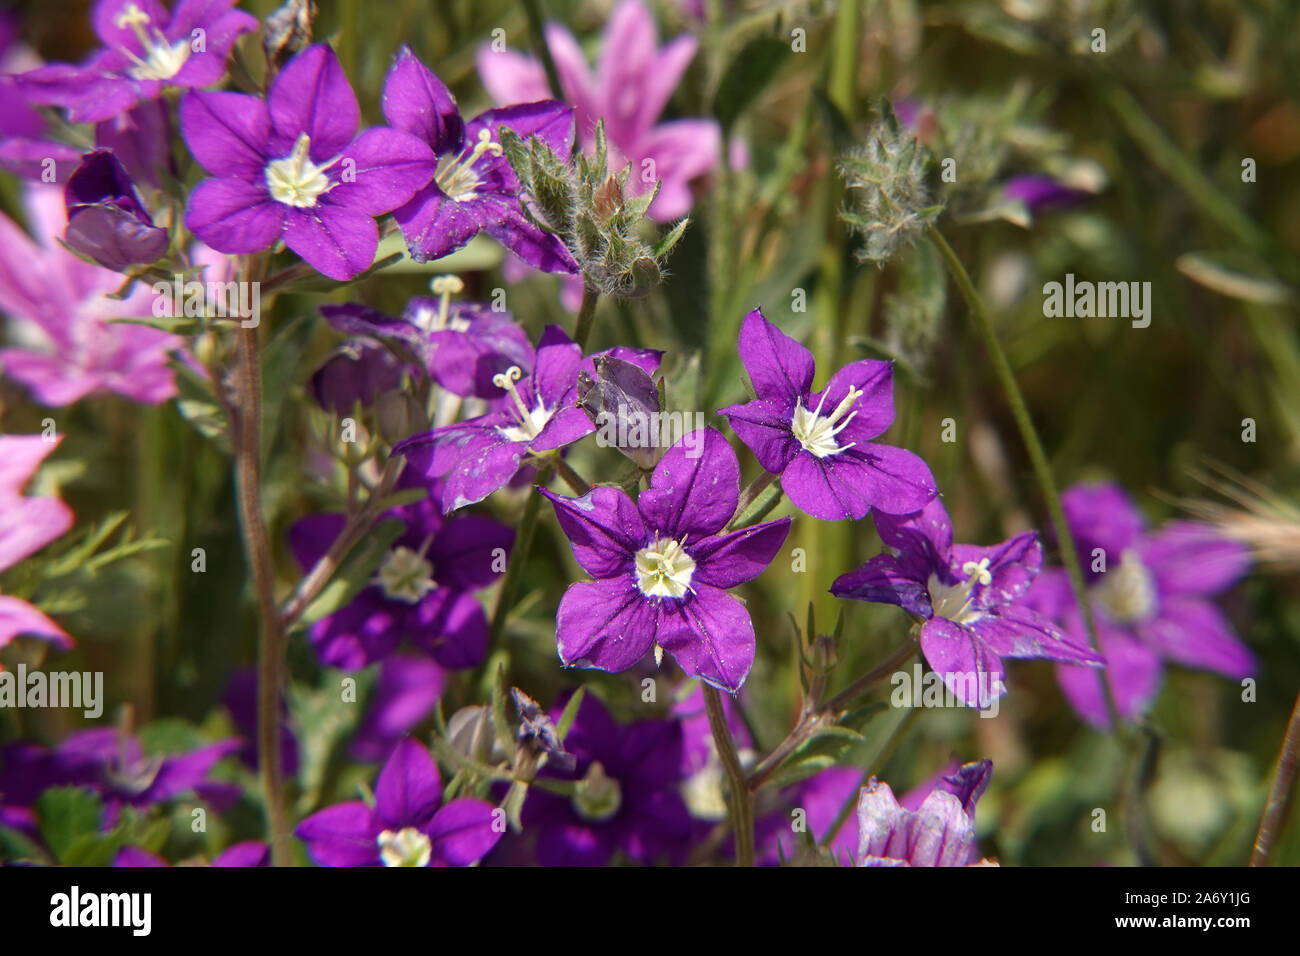 Legousia flowers Stock Photo